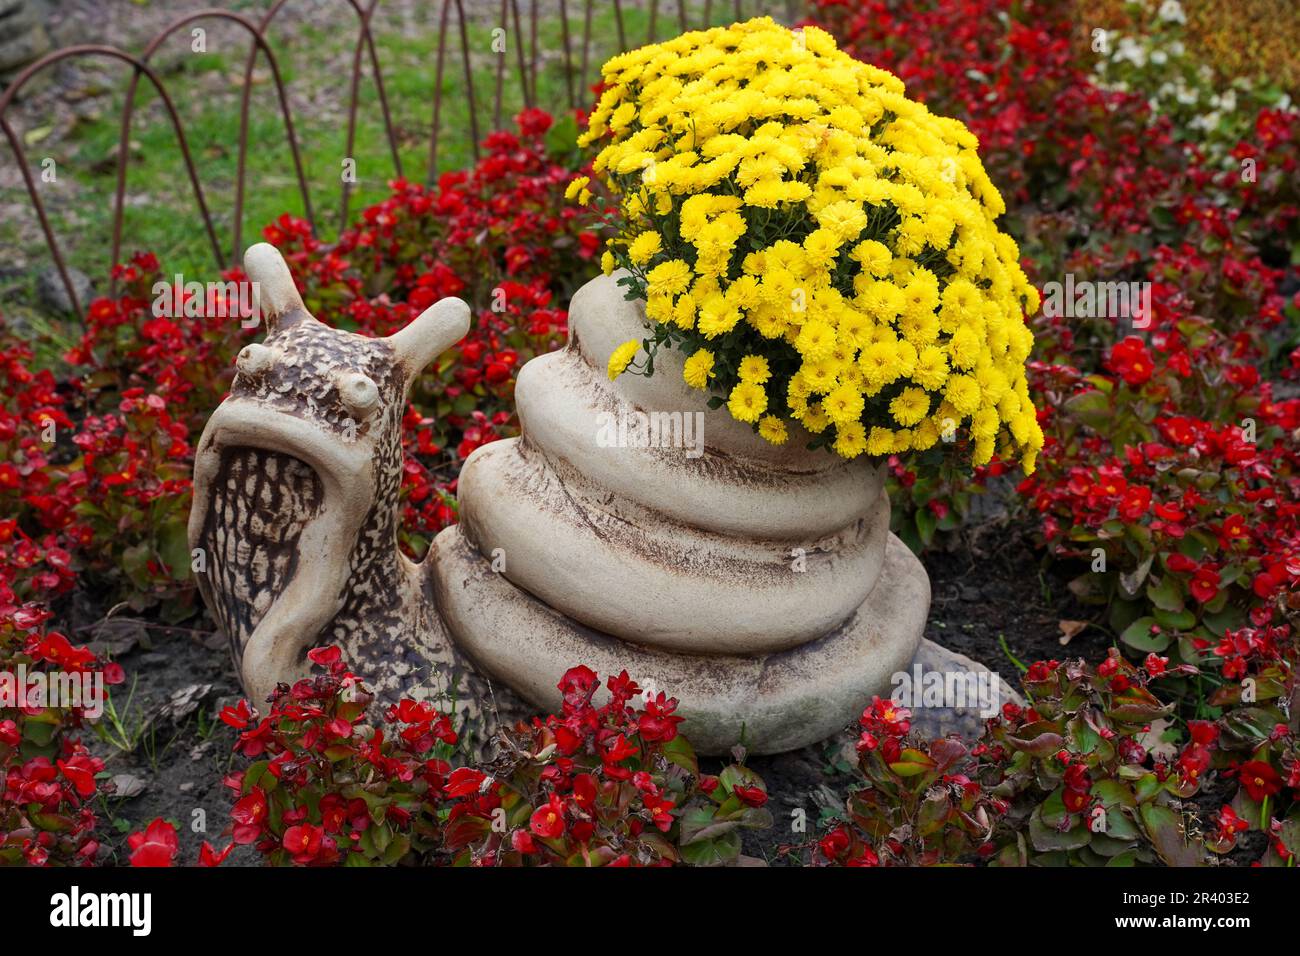 Jardin figure d'un escargot aux fleurs jaunes. Jardin. Banque D'Images